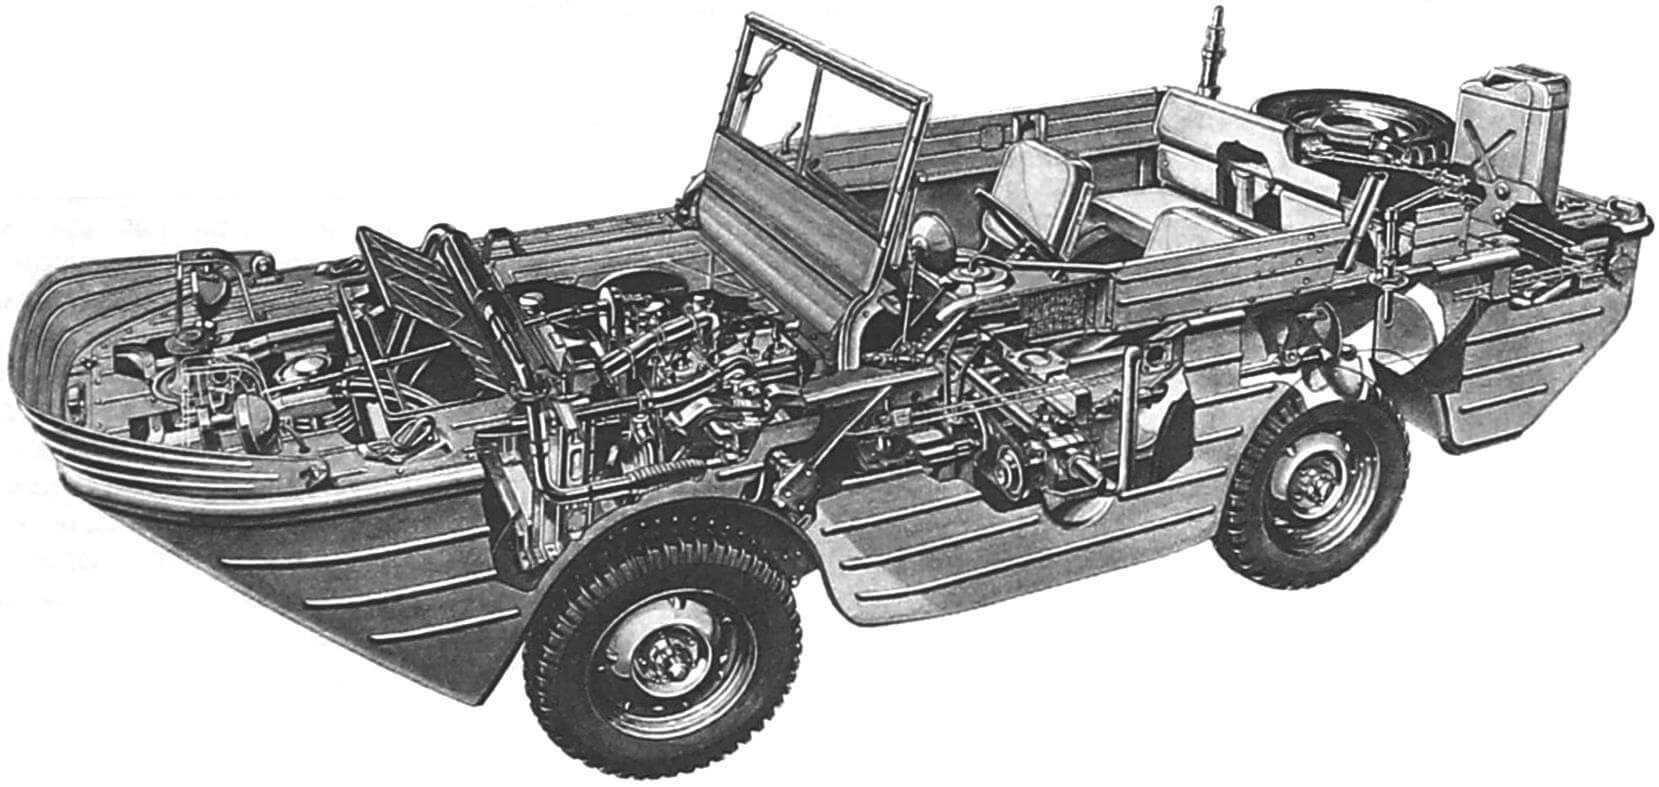 Компоновка автомобиля Ford GPA. По такой же схеме выполнены советские послевоенные амфибии и современные машины китайского производства